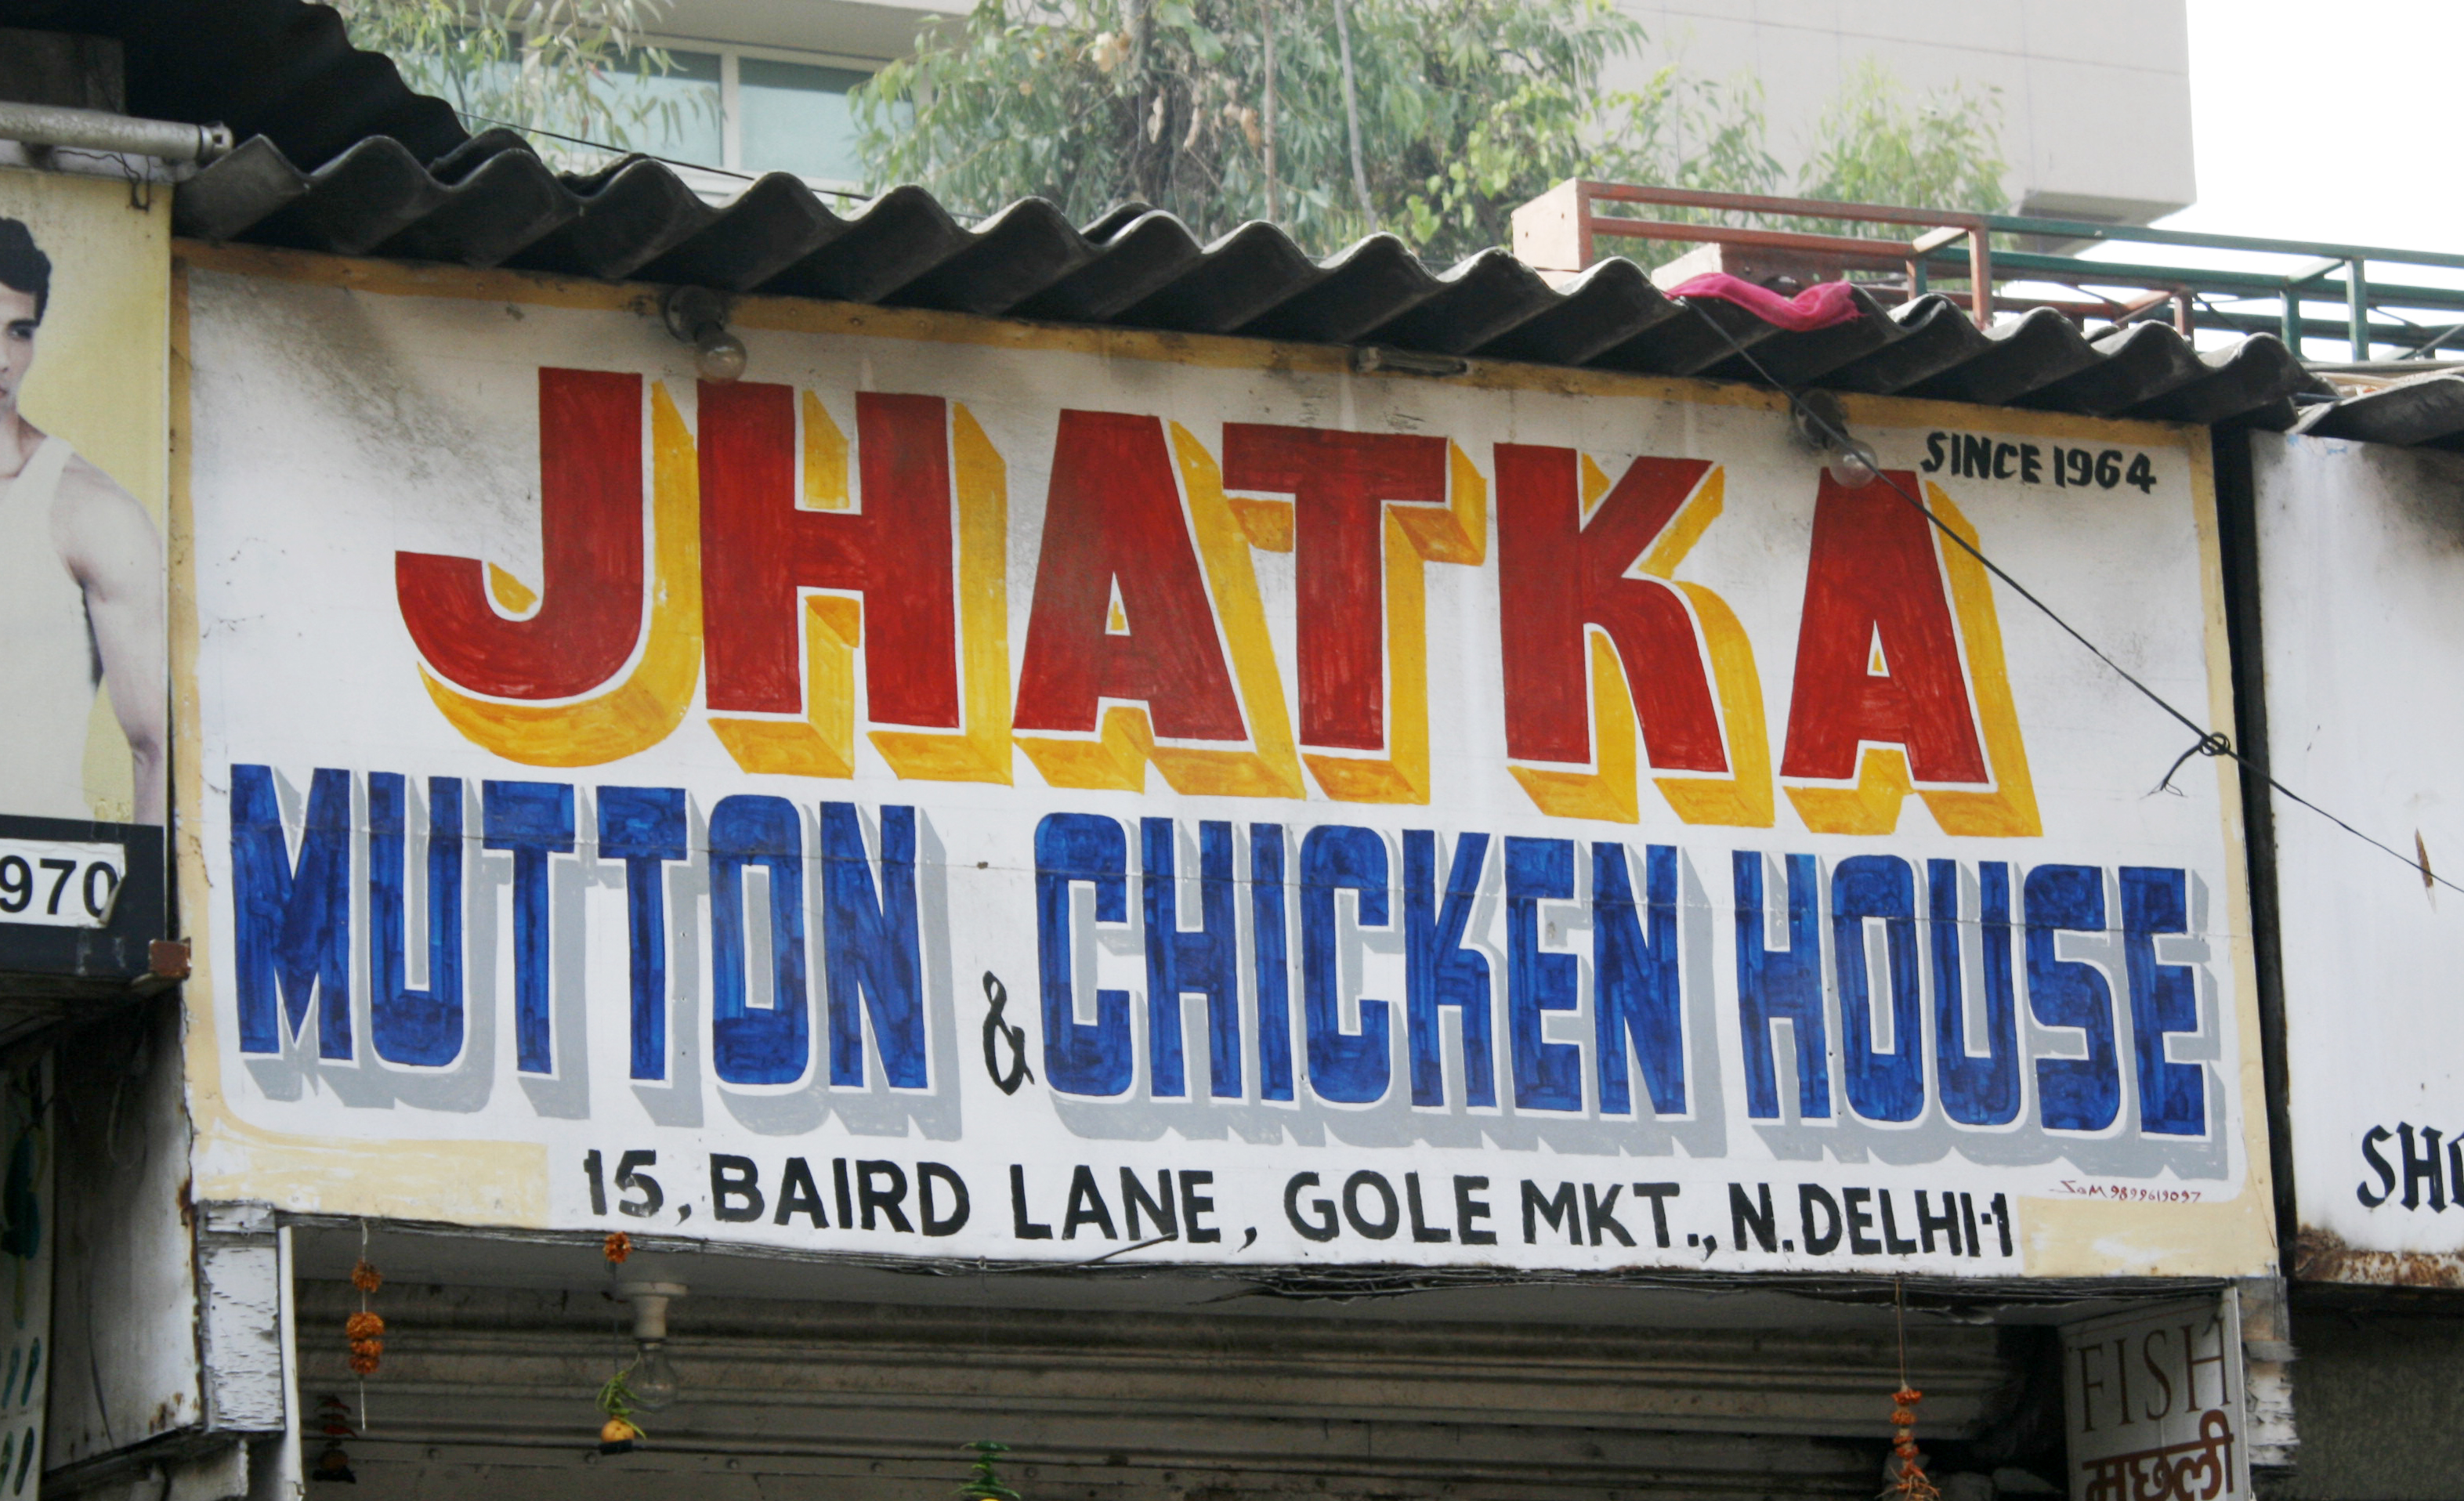 Jhatka Mutton & Chicken House